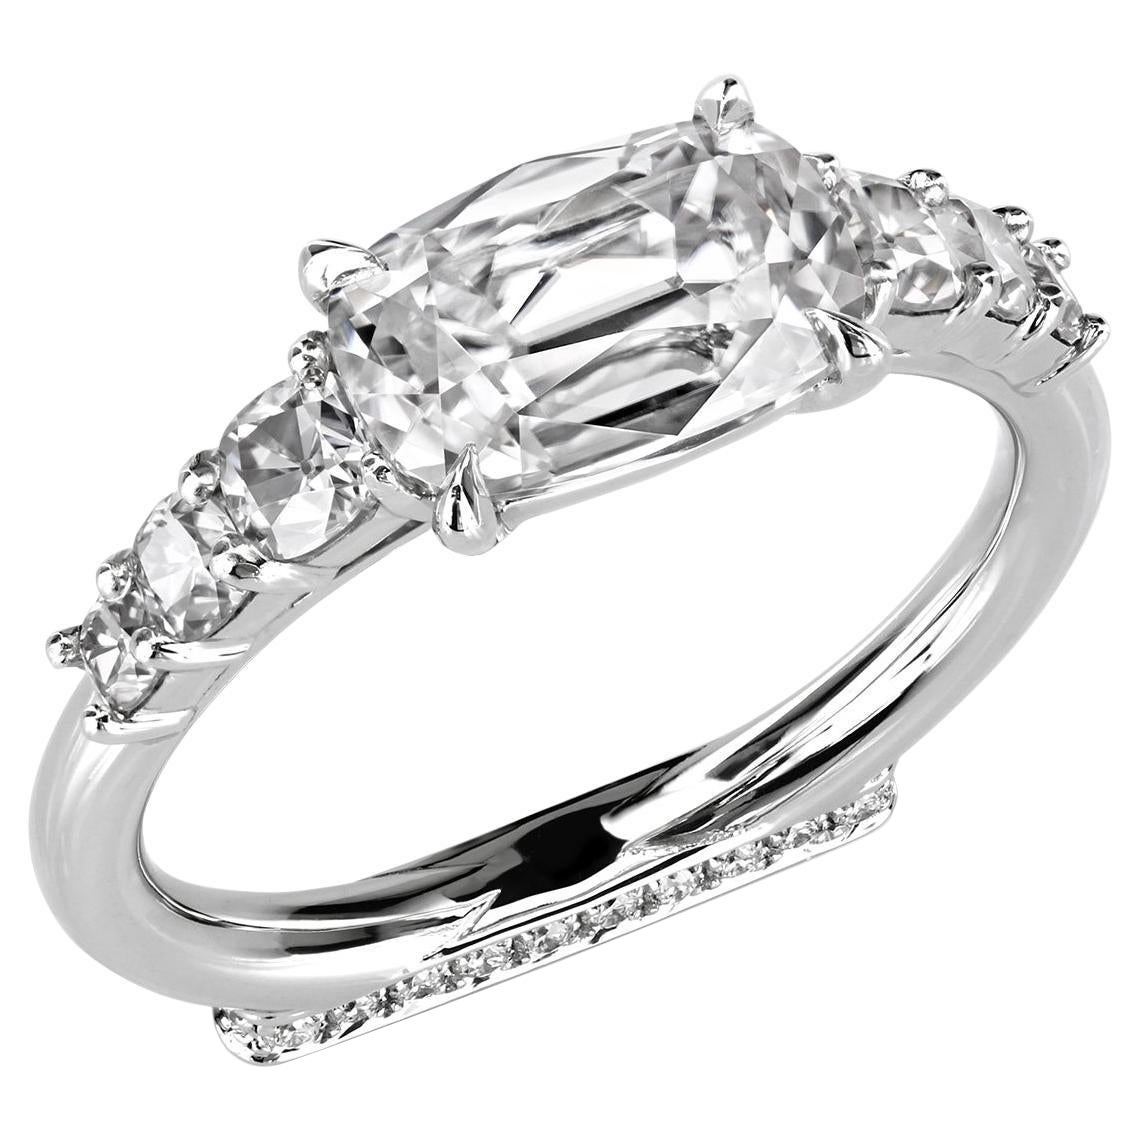 Leon Mege East-West Engagement Ring Features Rare True Antique Cushion Diamond For Sale